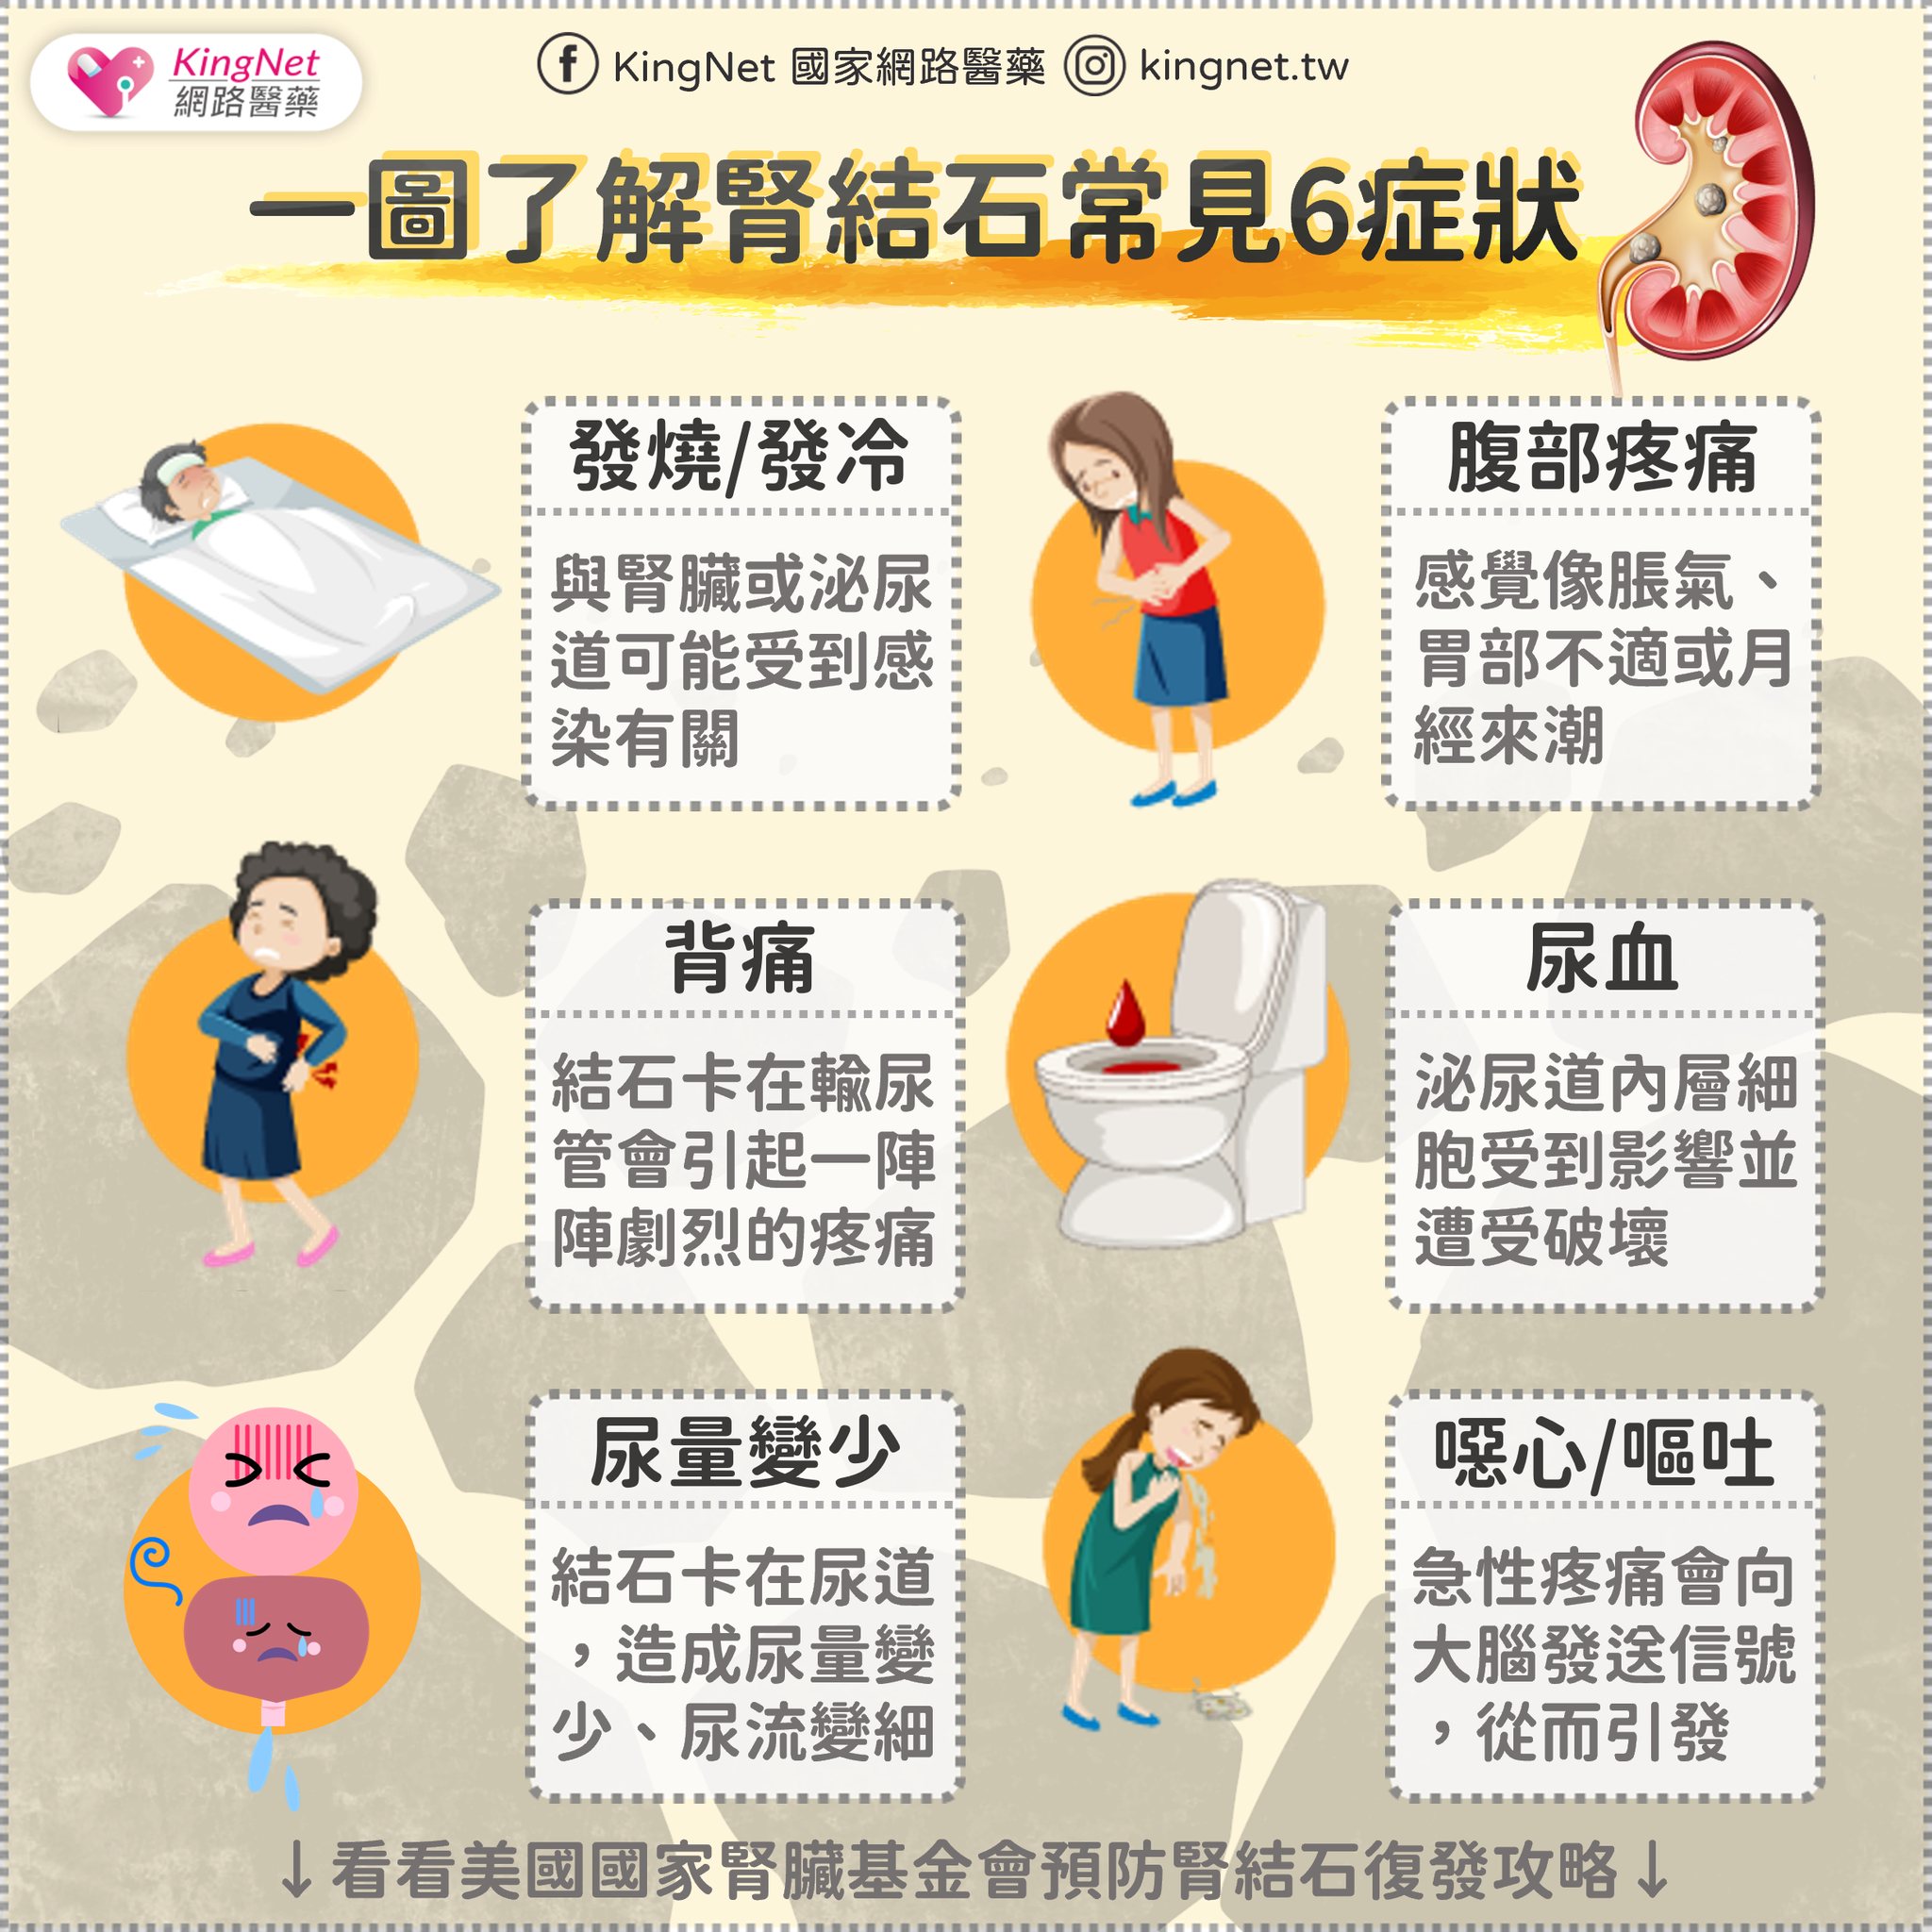 拒當洗腎一族... 小心這7種習慣可能增加腎臟損害的風險!_圖2